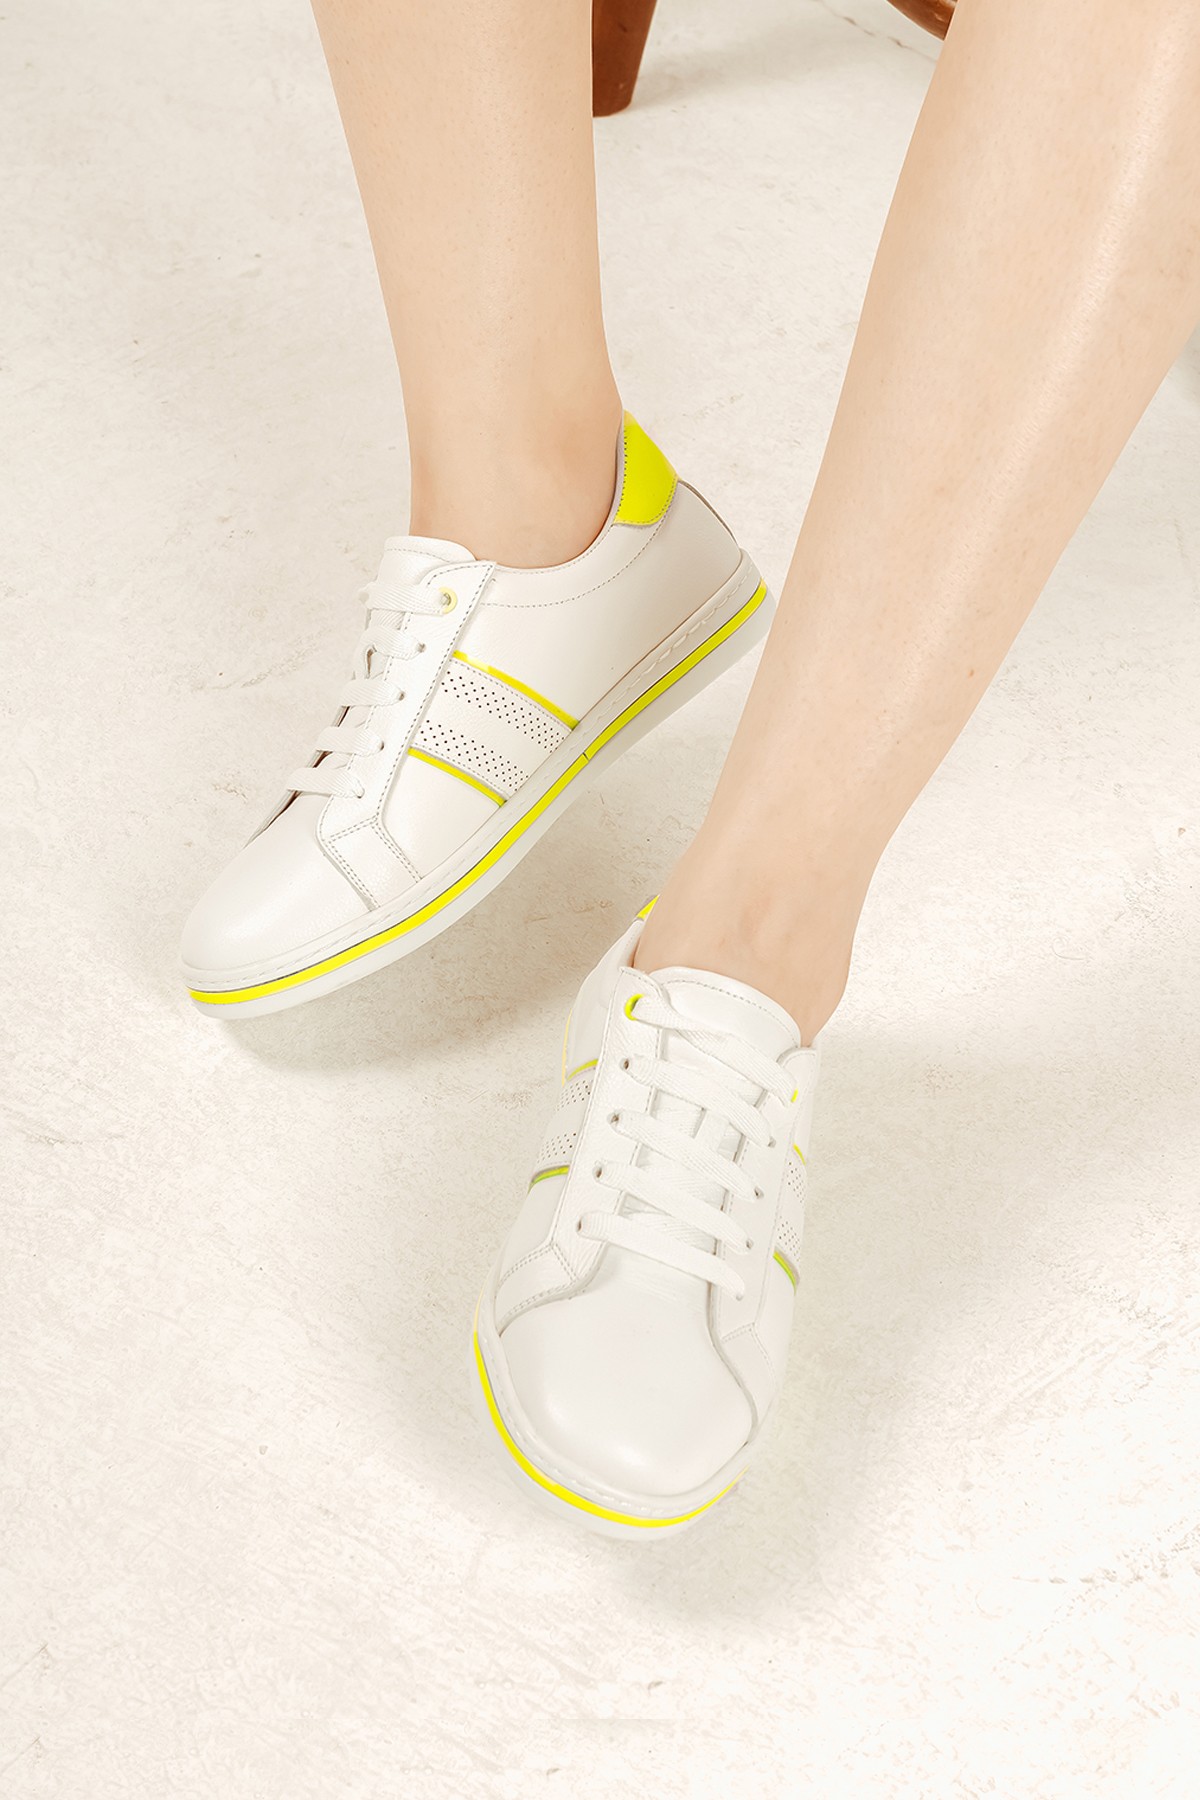 Cooliza Hakiki Deri Bağcıklı Renkli Rahat Kadın Günlük Yürüyüş Spor Ayakkabı